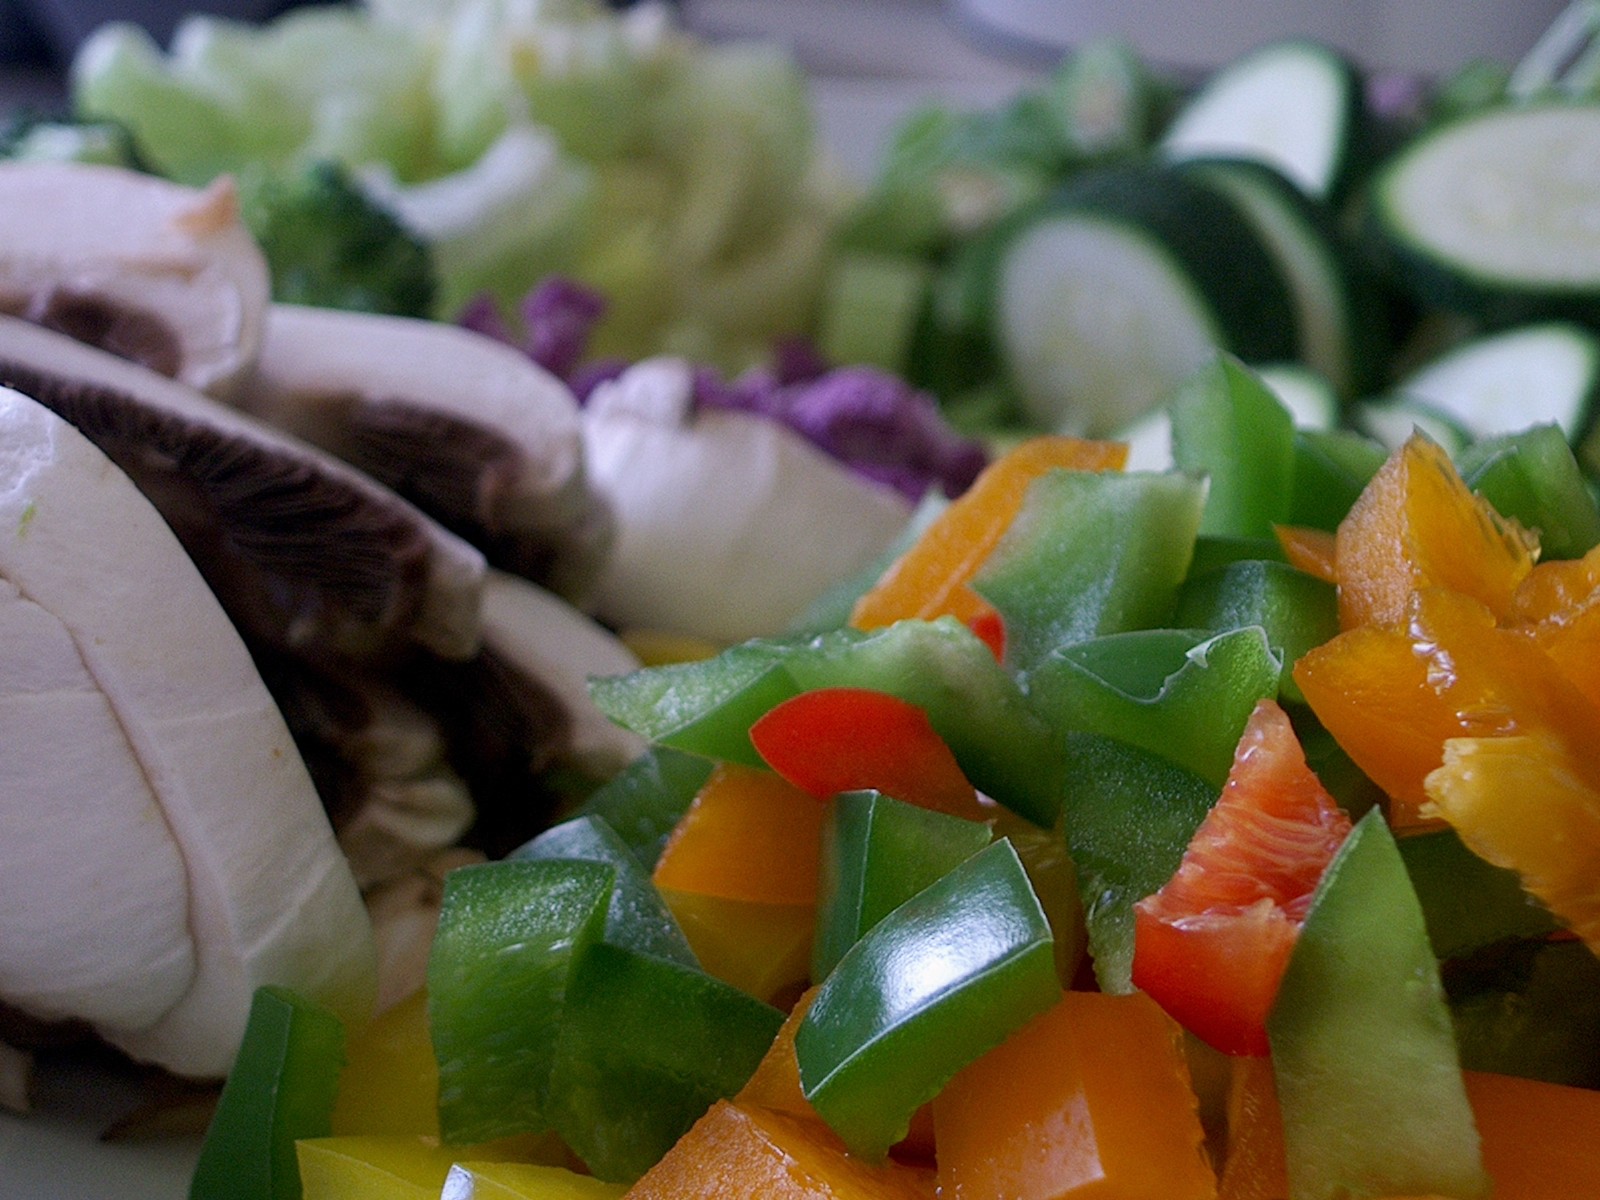 دور الخضروات والفواكه في الوقاية من امراض السرطان Chopped_Vegetables